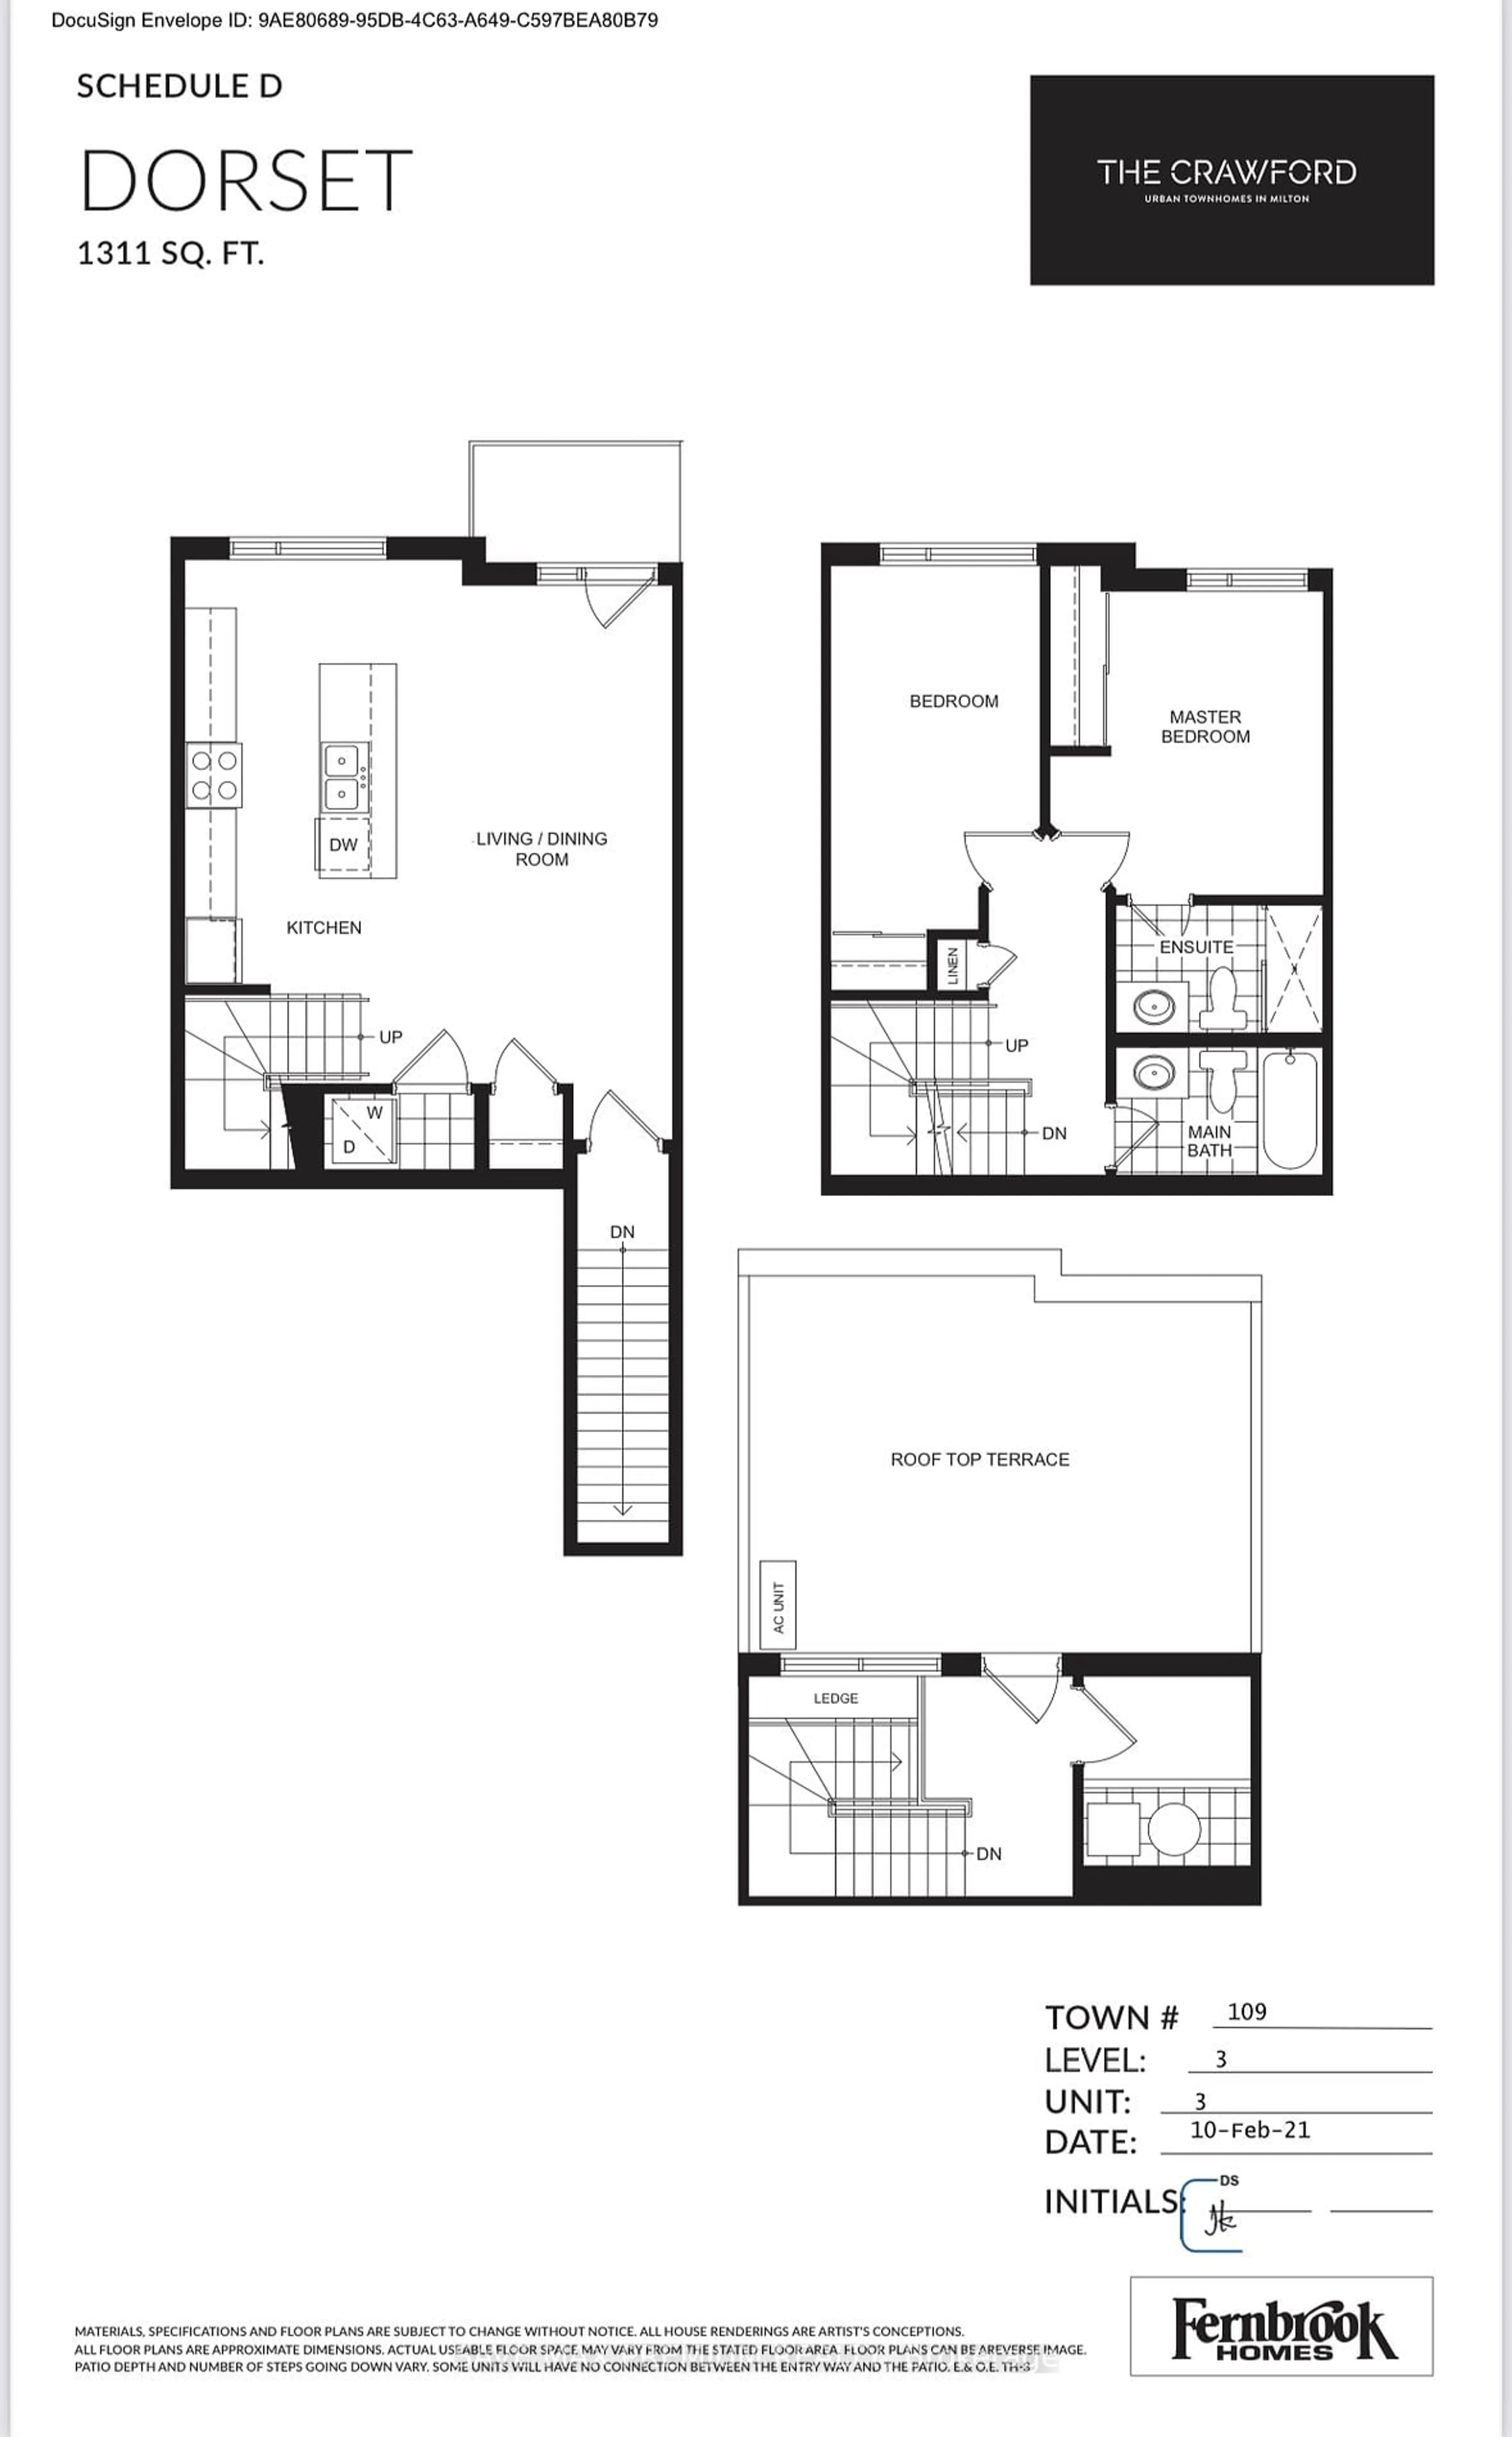 Floor plan for 8175 Britannia Rd #Unit# 3, Milton Ontario L9T 7E7